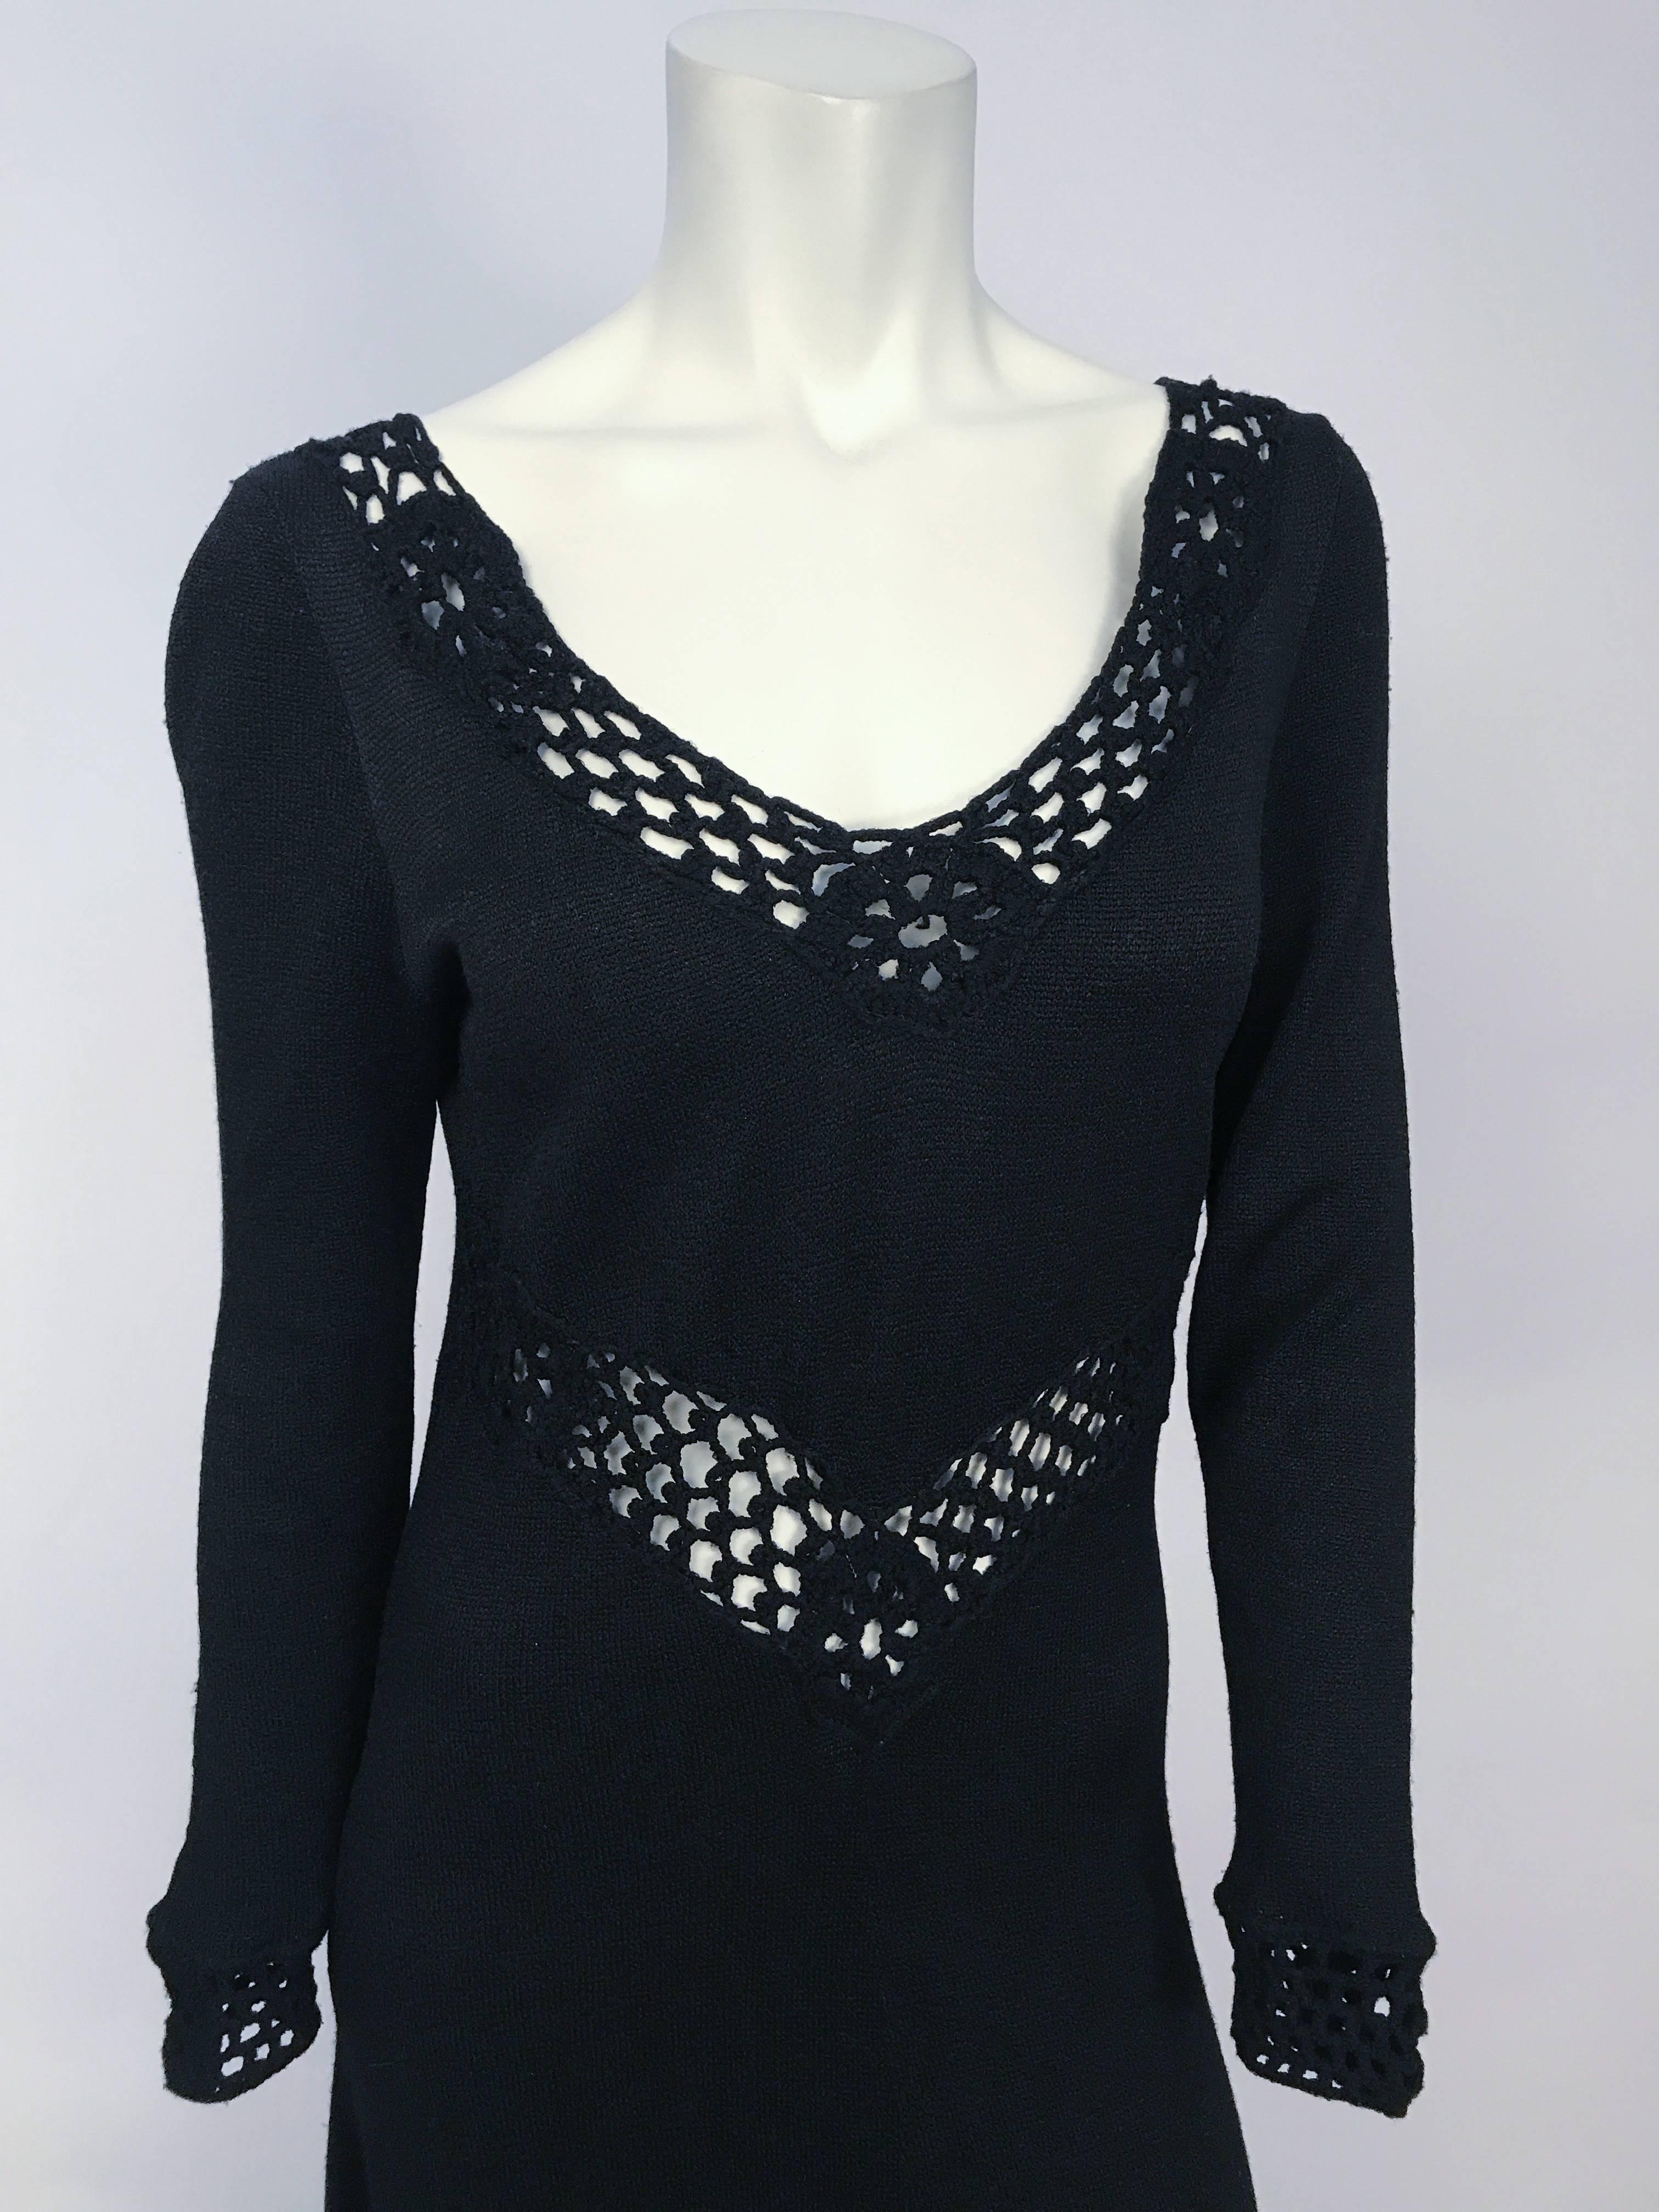 1970s Black Knit and Crochet Full Length Dress. Black full length knit dress with crochet cuffs, neckline, and v-waist detail. 